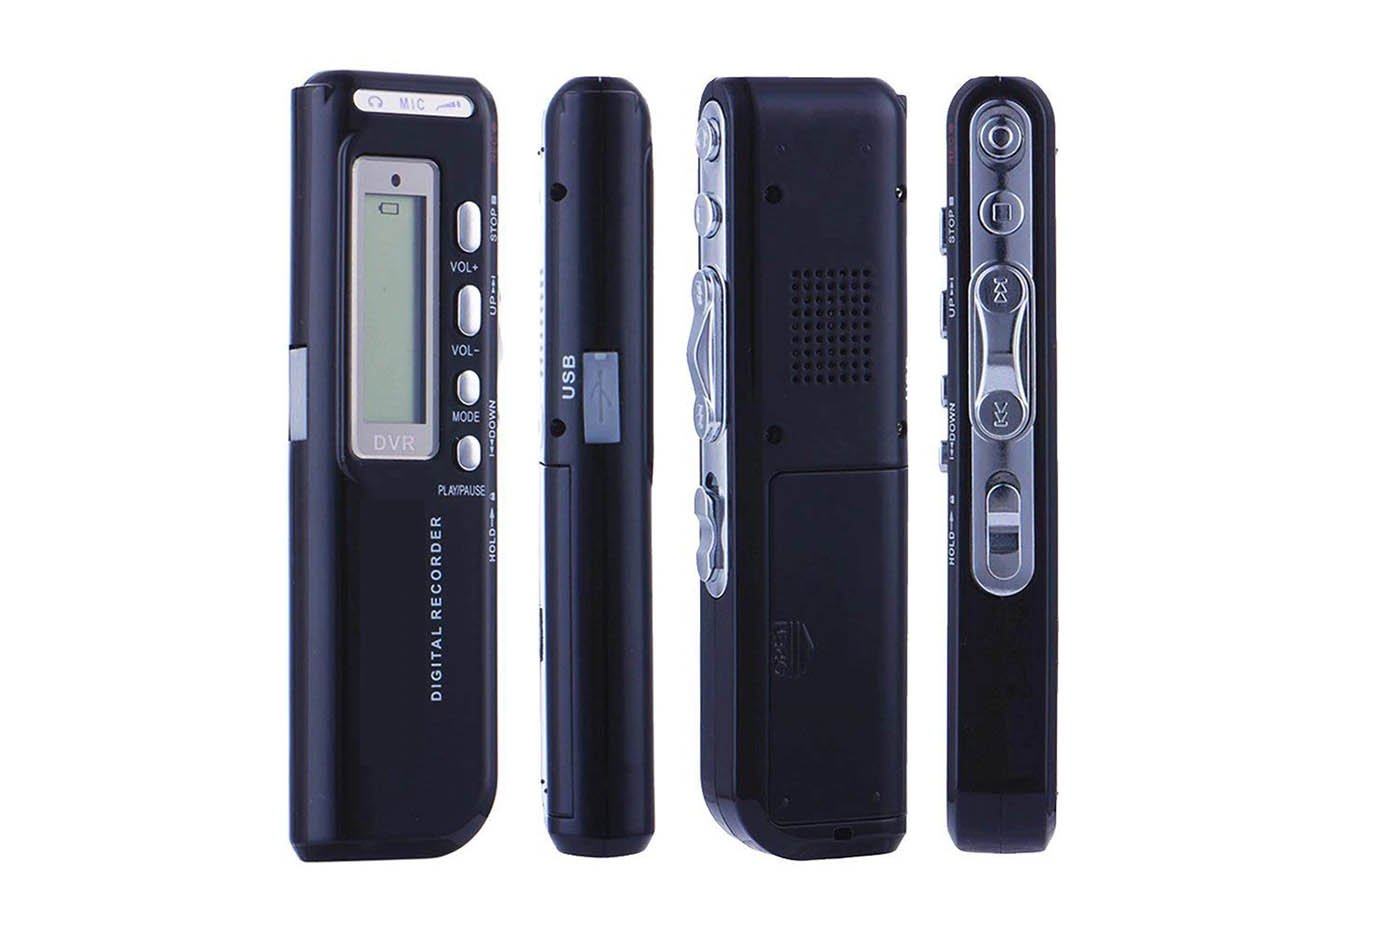 Mini registratore vocale 8gb portatile USB digitale telefonico mp3 -  Videonet - Townforyou - Fai acquisti e prenota eventi vicino a te